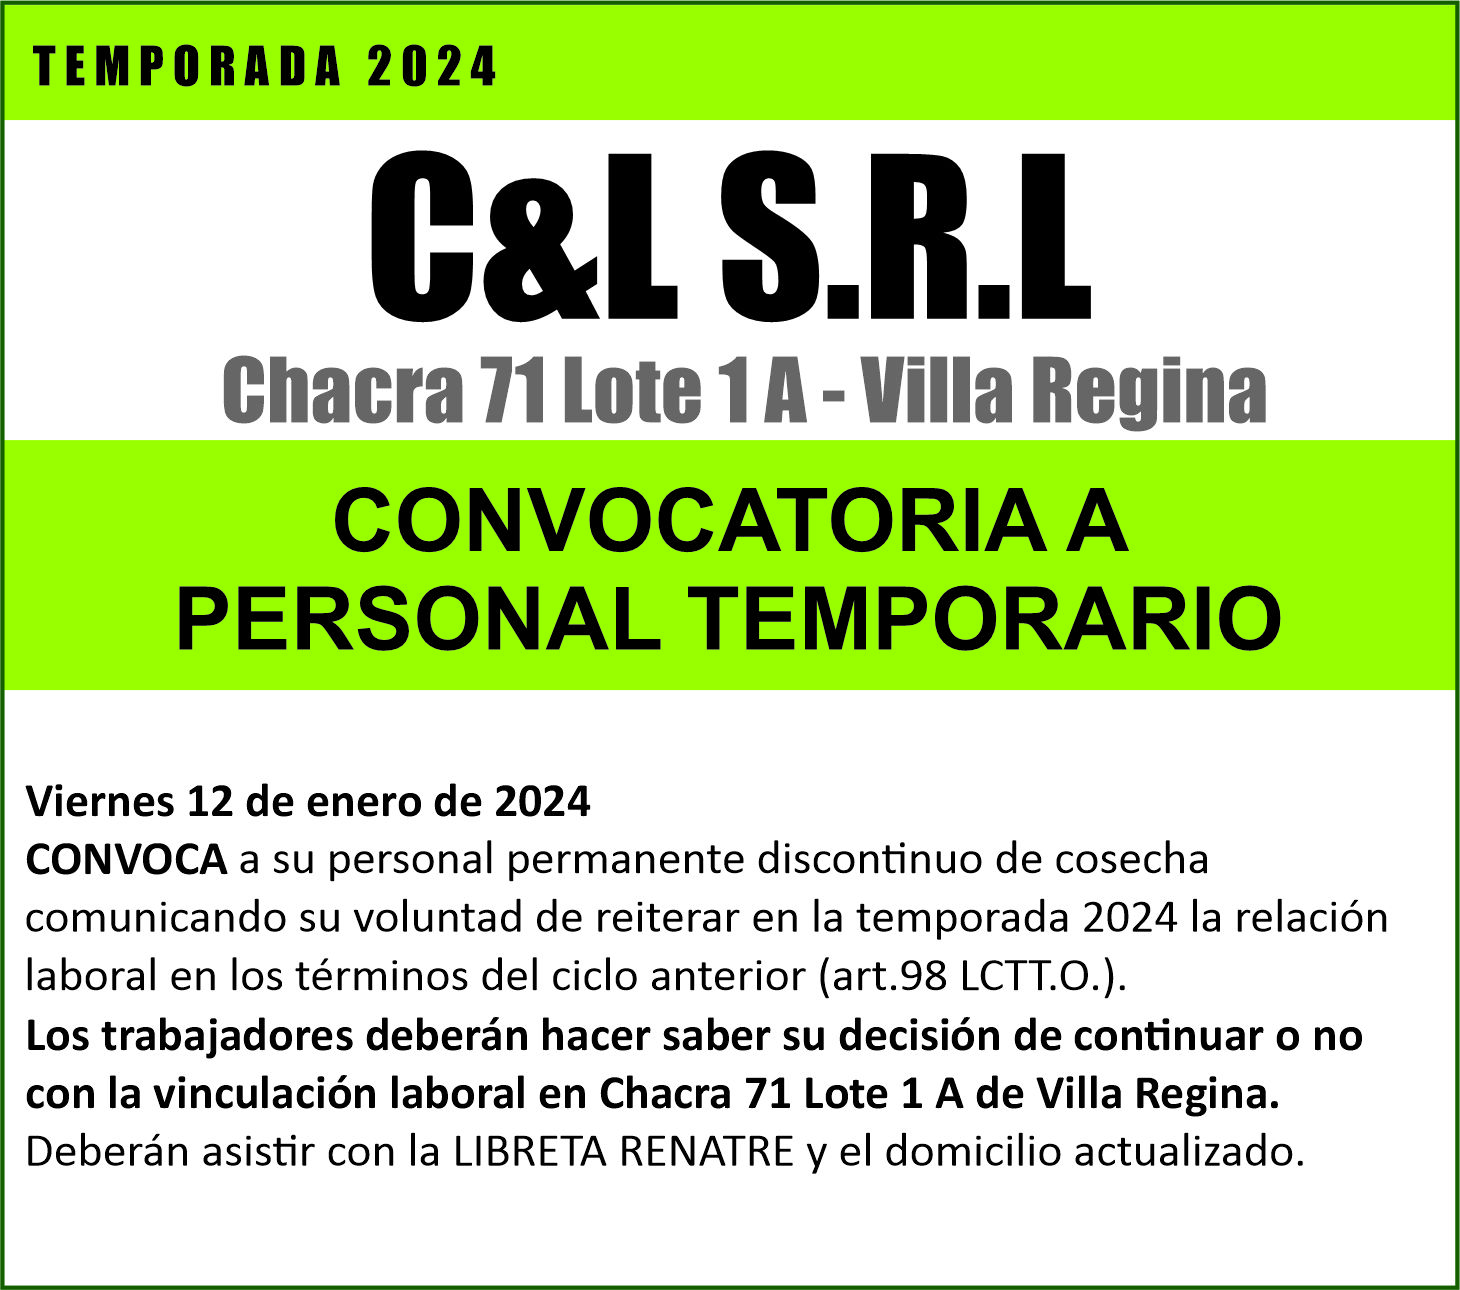 C&L S.R.L llama a todo su personal de temporada 2024